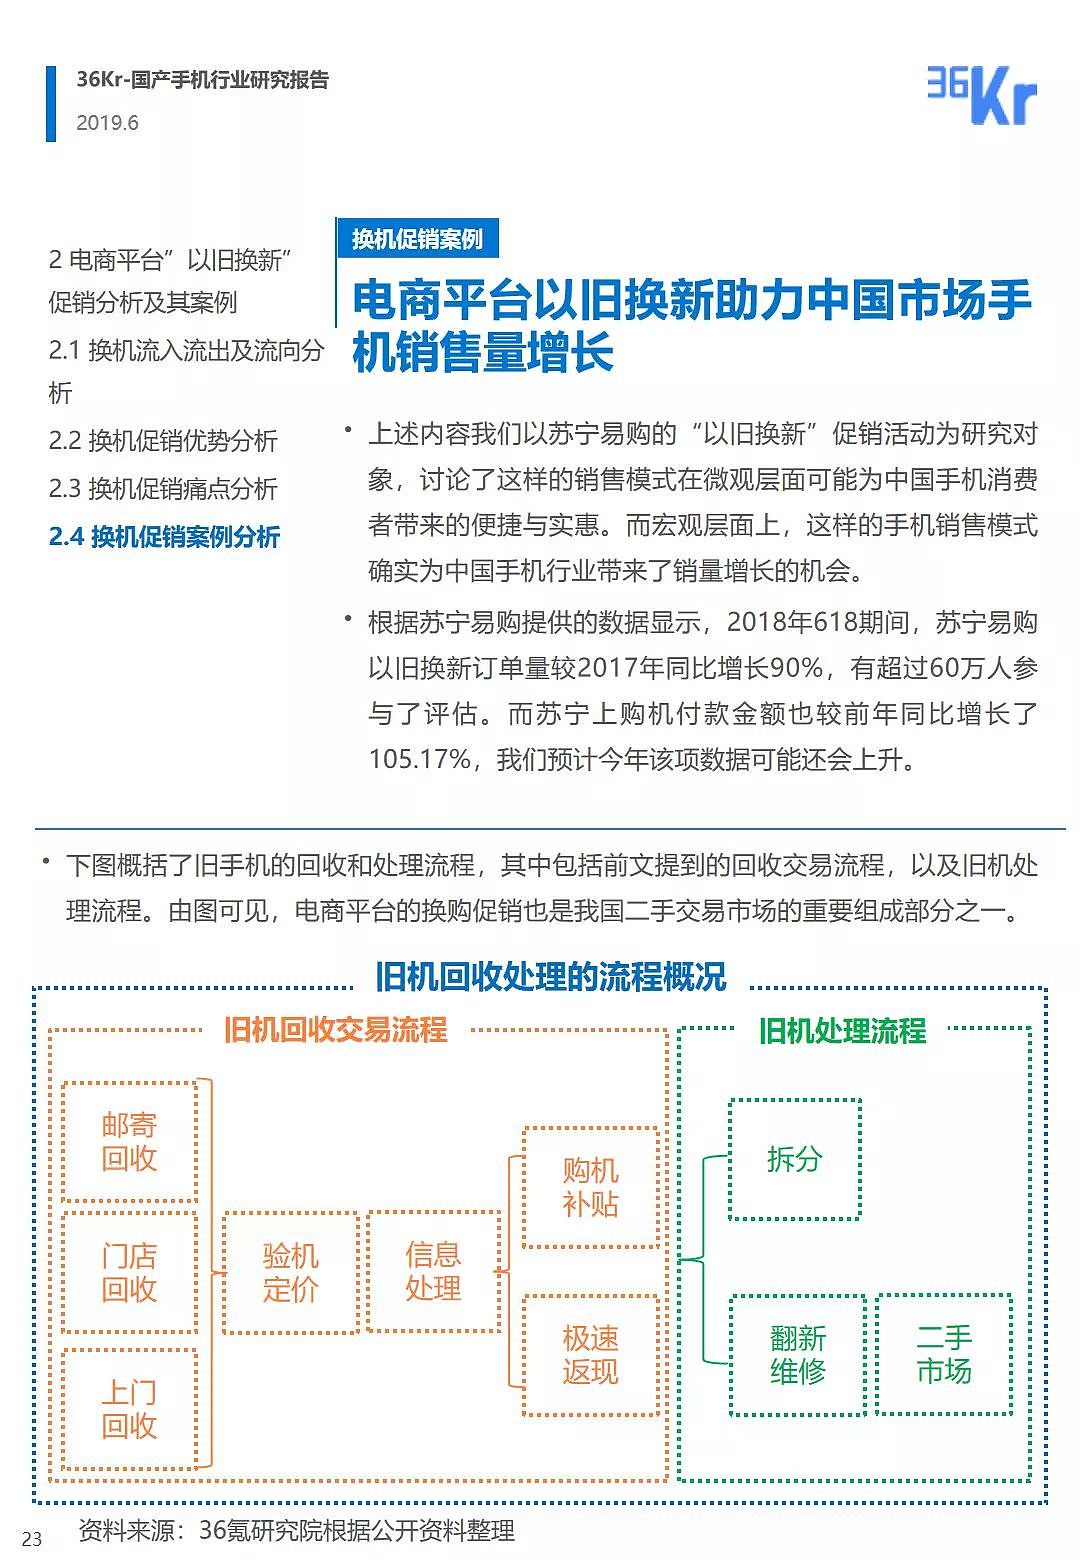 中国手机品牌市场营销研究报告 | 36氪研究 - 24